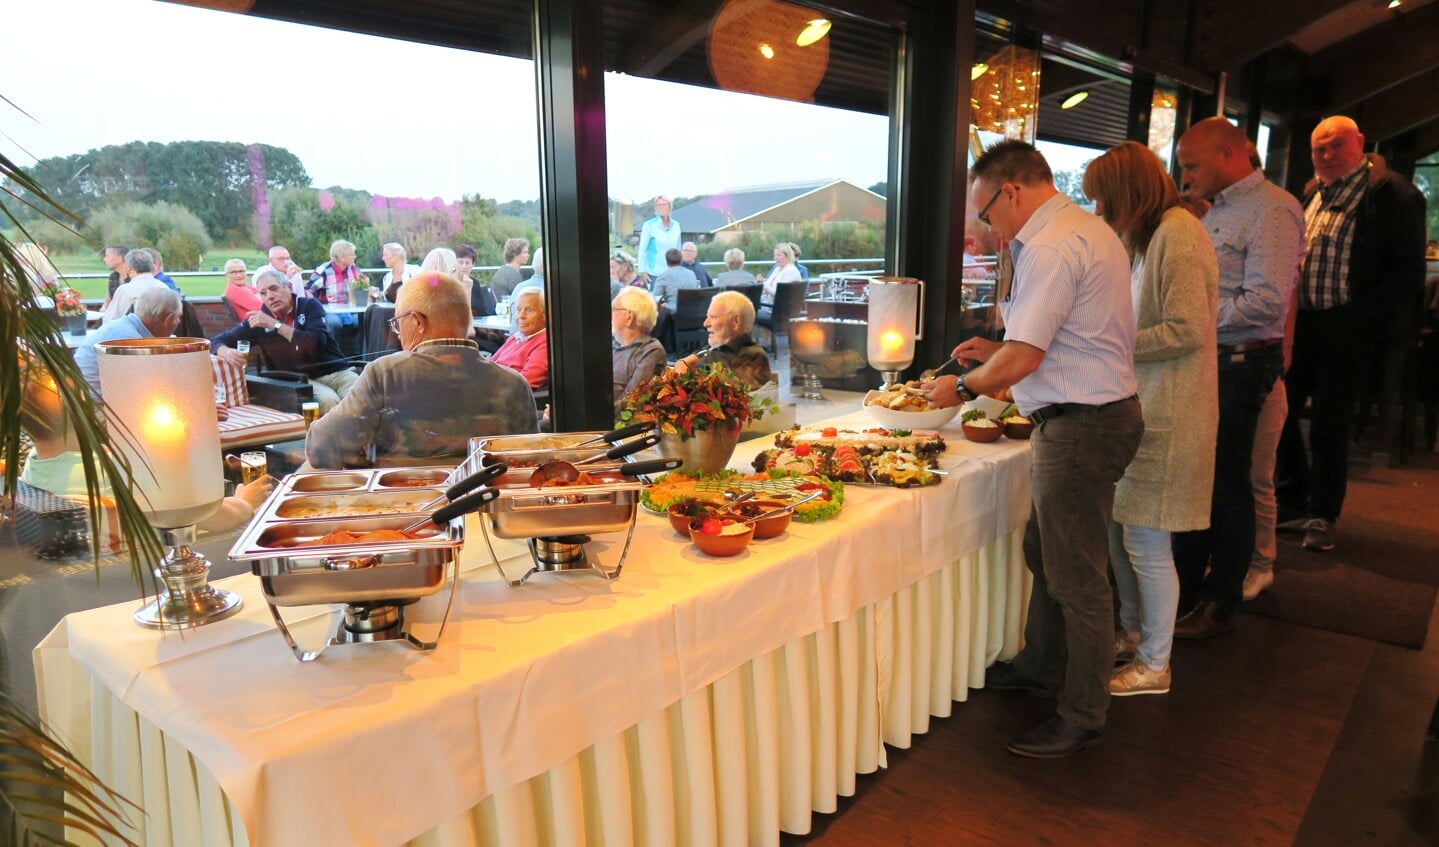 Het feest had een door iedereen gewaardeerd culinair karakter. Foto: Theo Huijskes